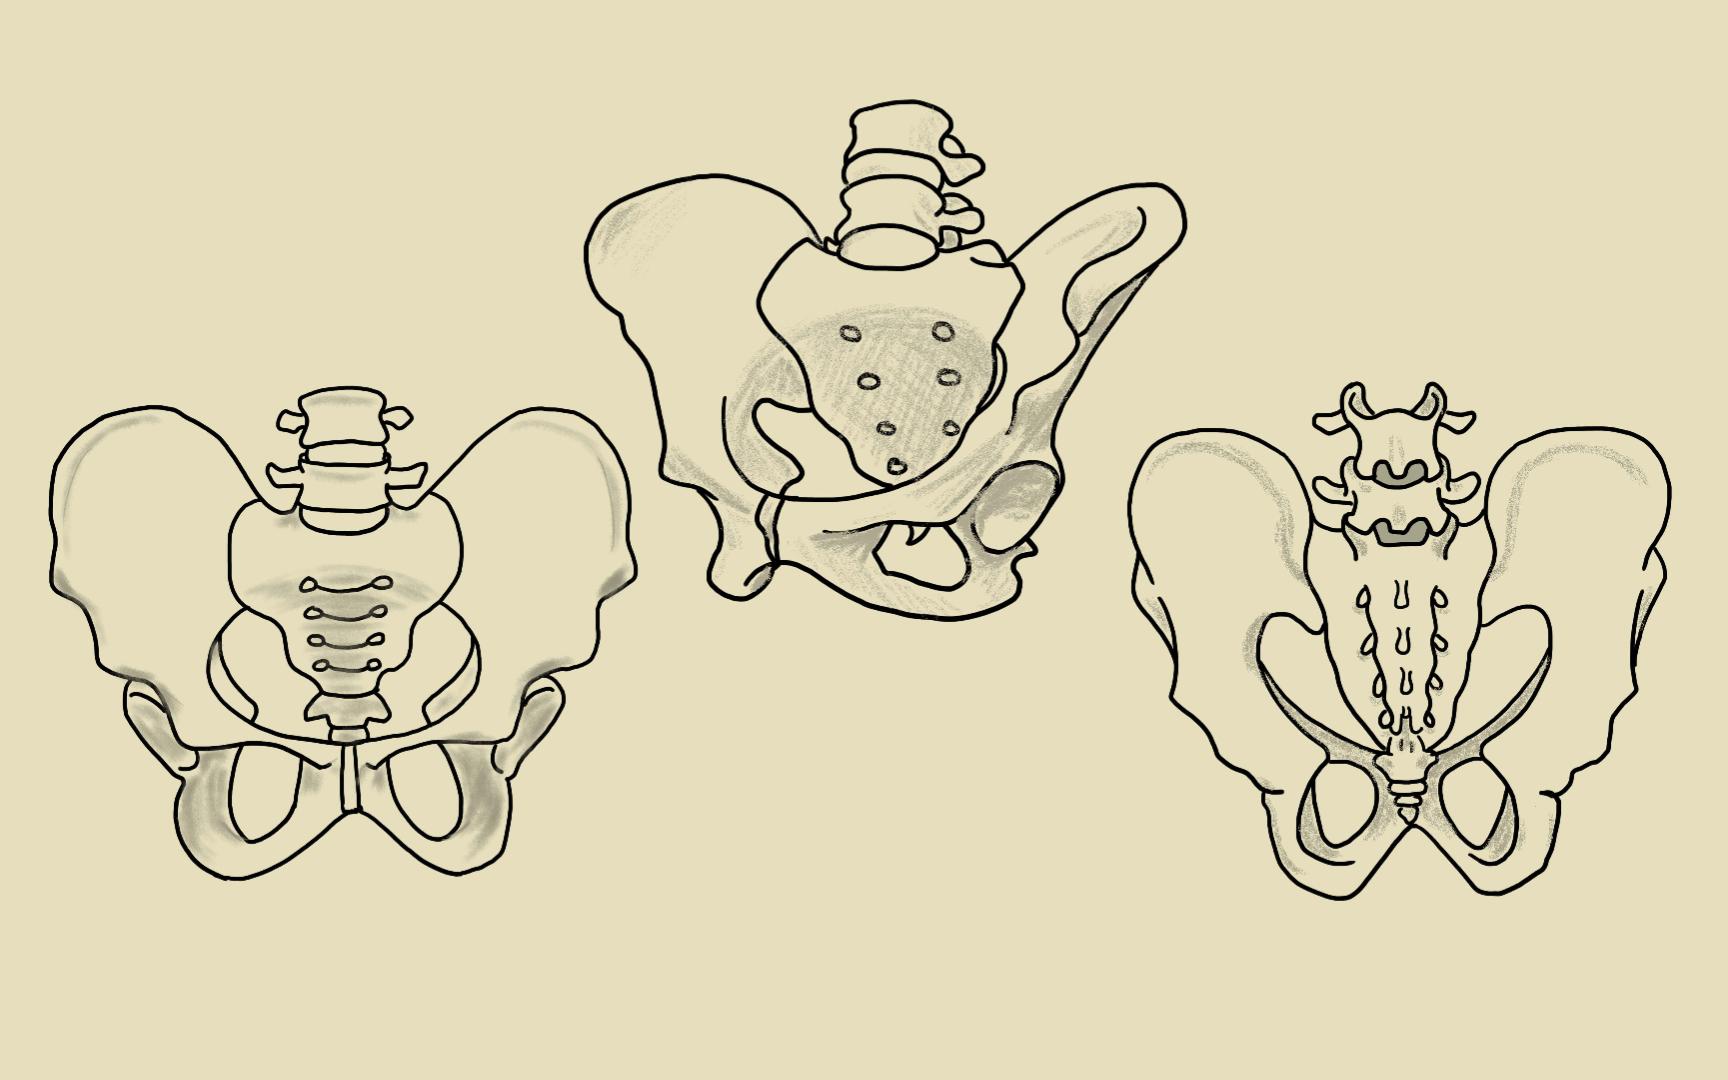 骨盆图片结构图简笔画图片